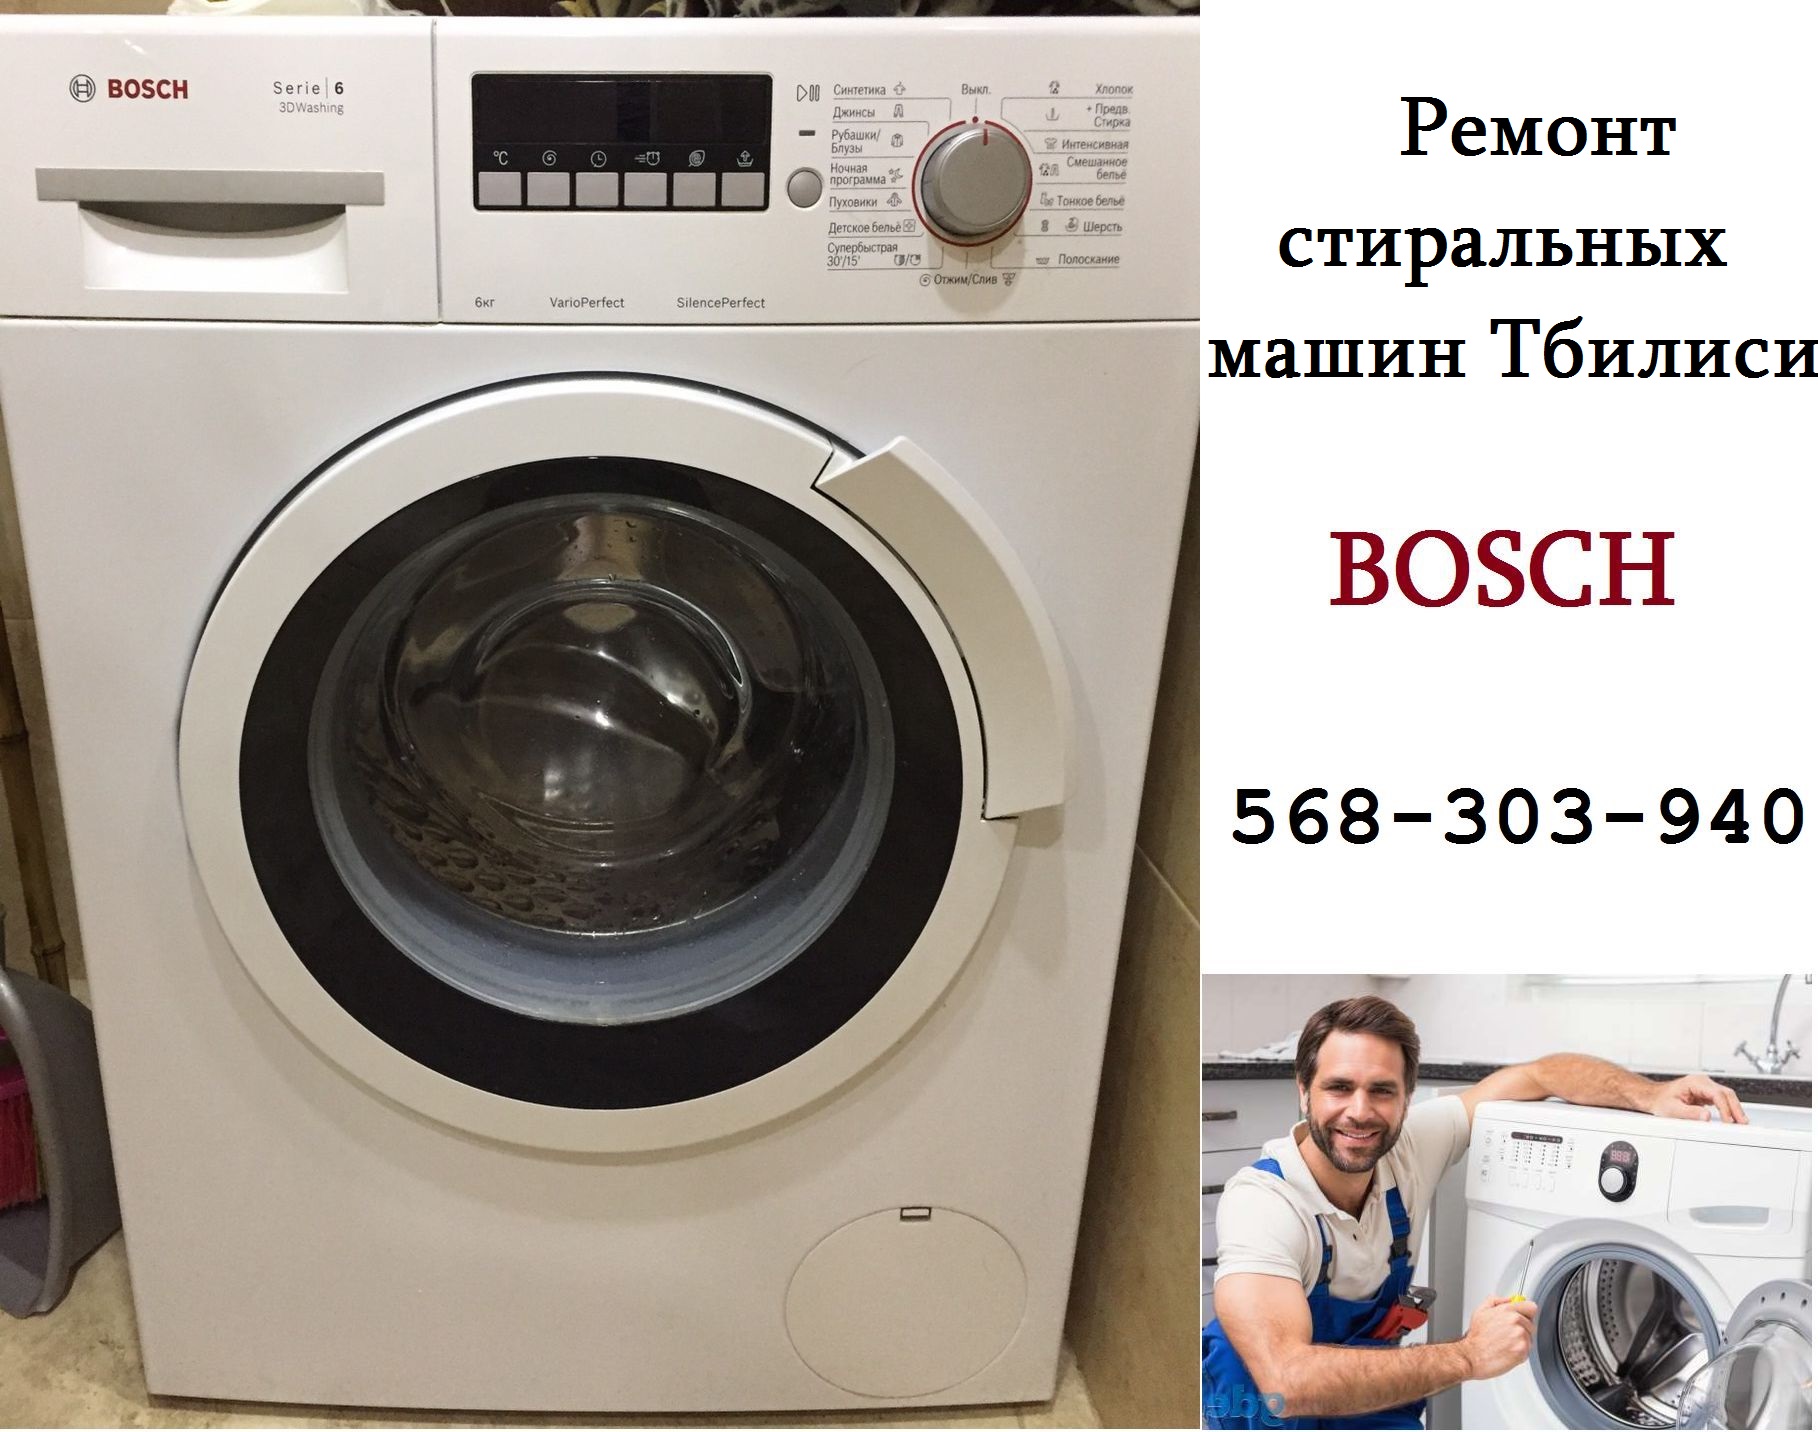 ремонт стиральных машин Бош Bosch Тбилиси